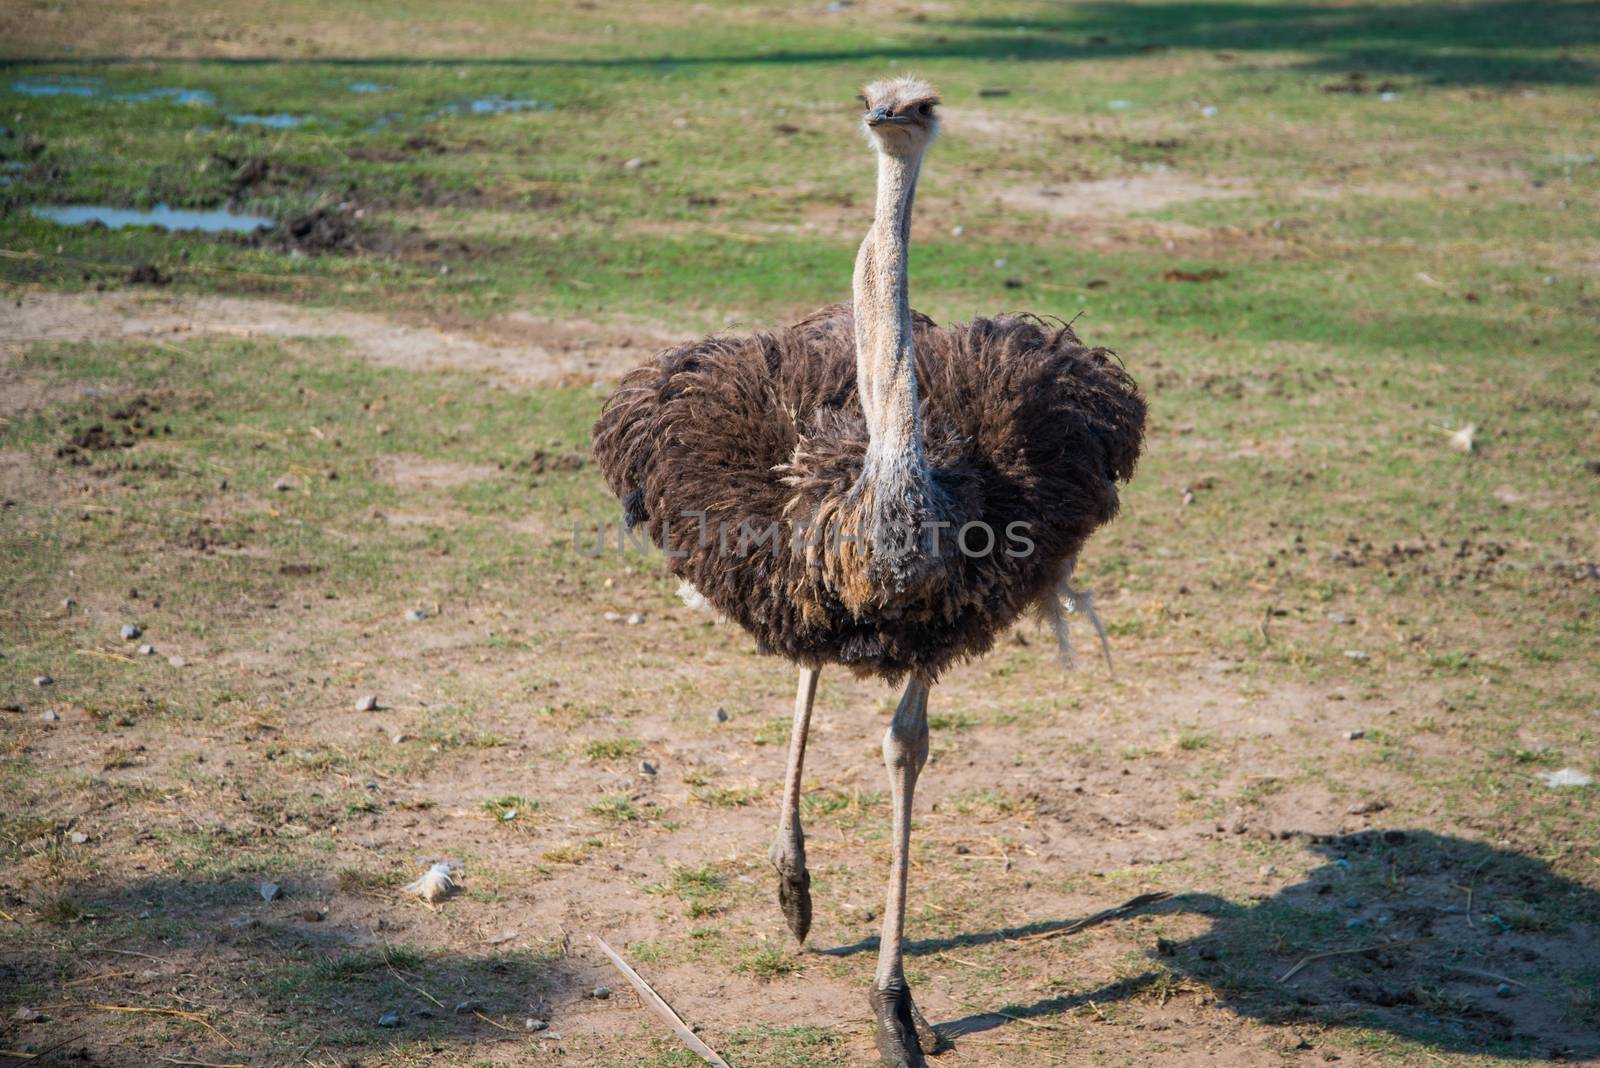 Ostrich run over the savanna by jakgree